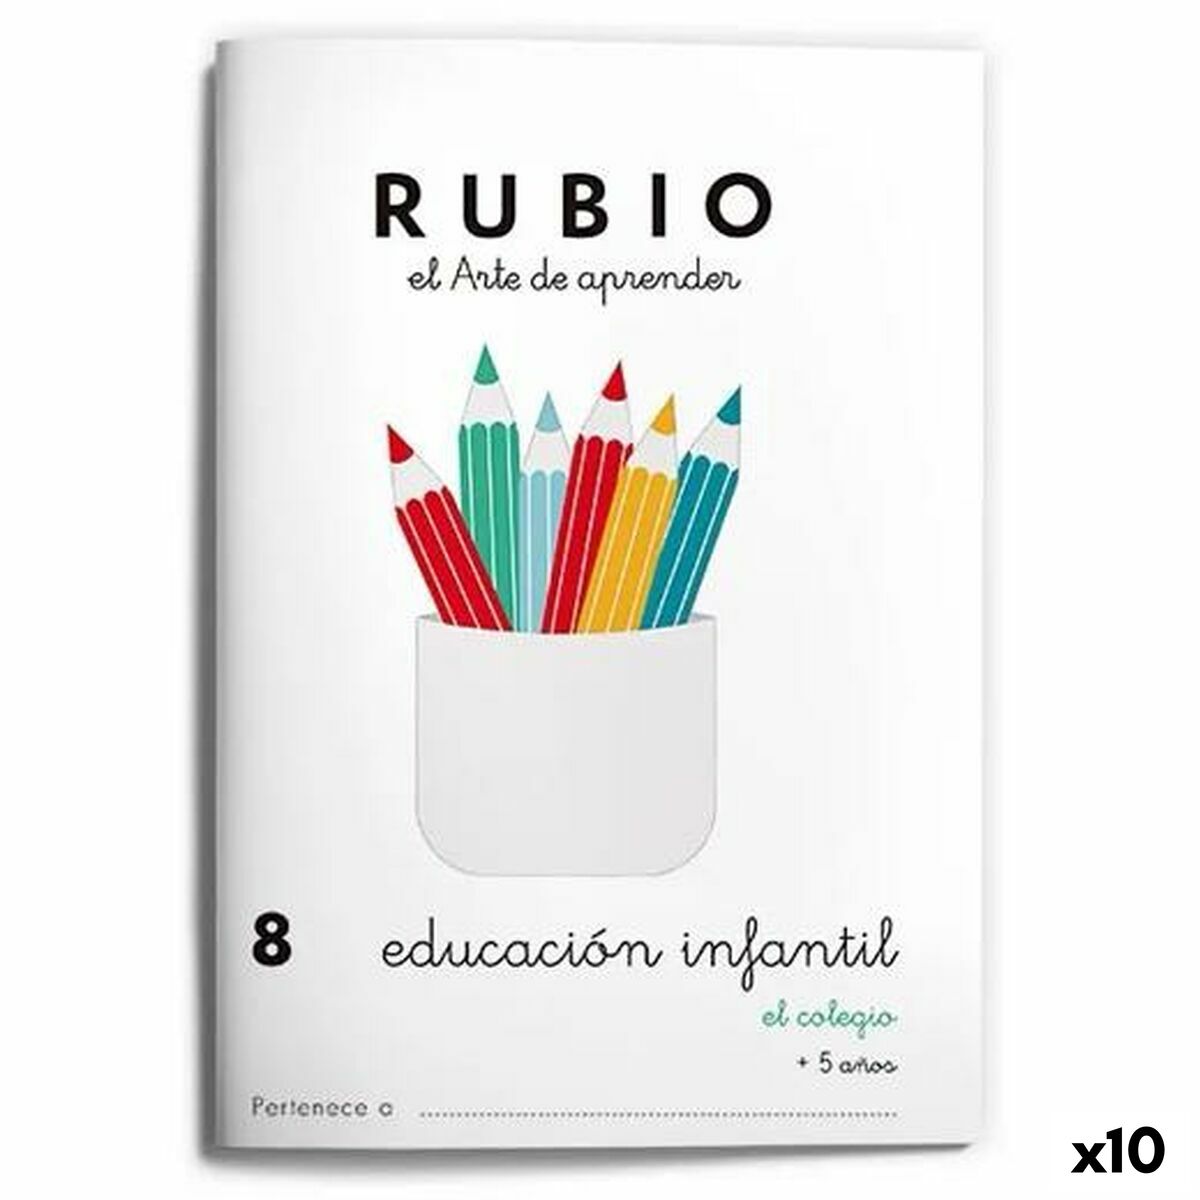 Notizbuch für die frühkindliche Bildung Rubio Nº8 A5 Spanisch (10 Stück)